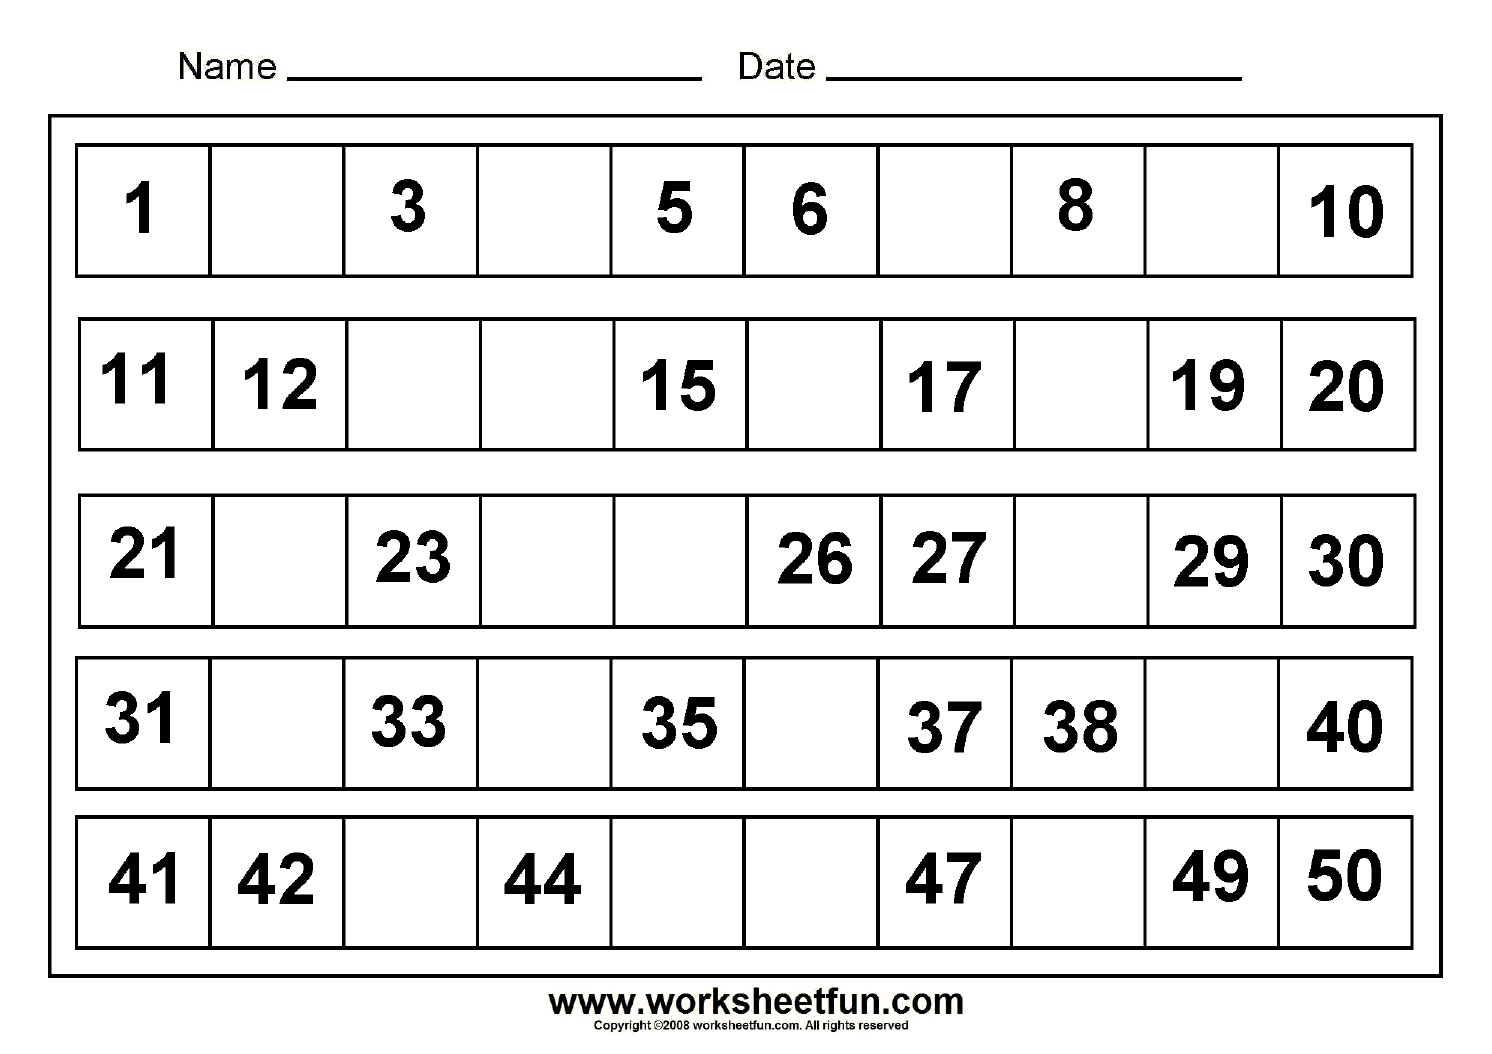 Missing Numbers 1 100 Worksheet Image